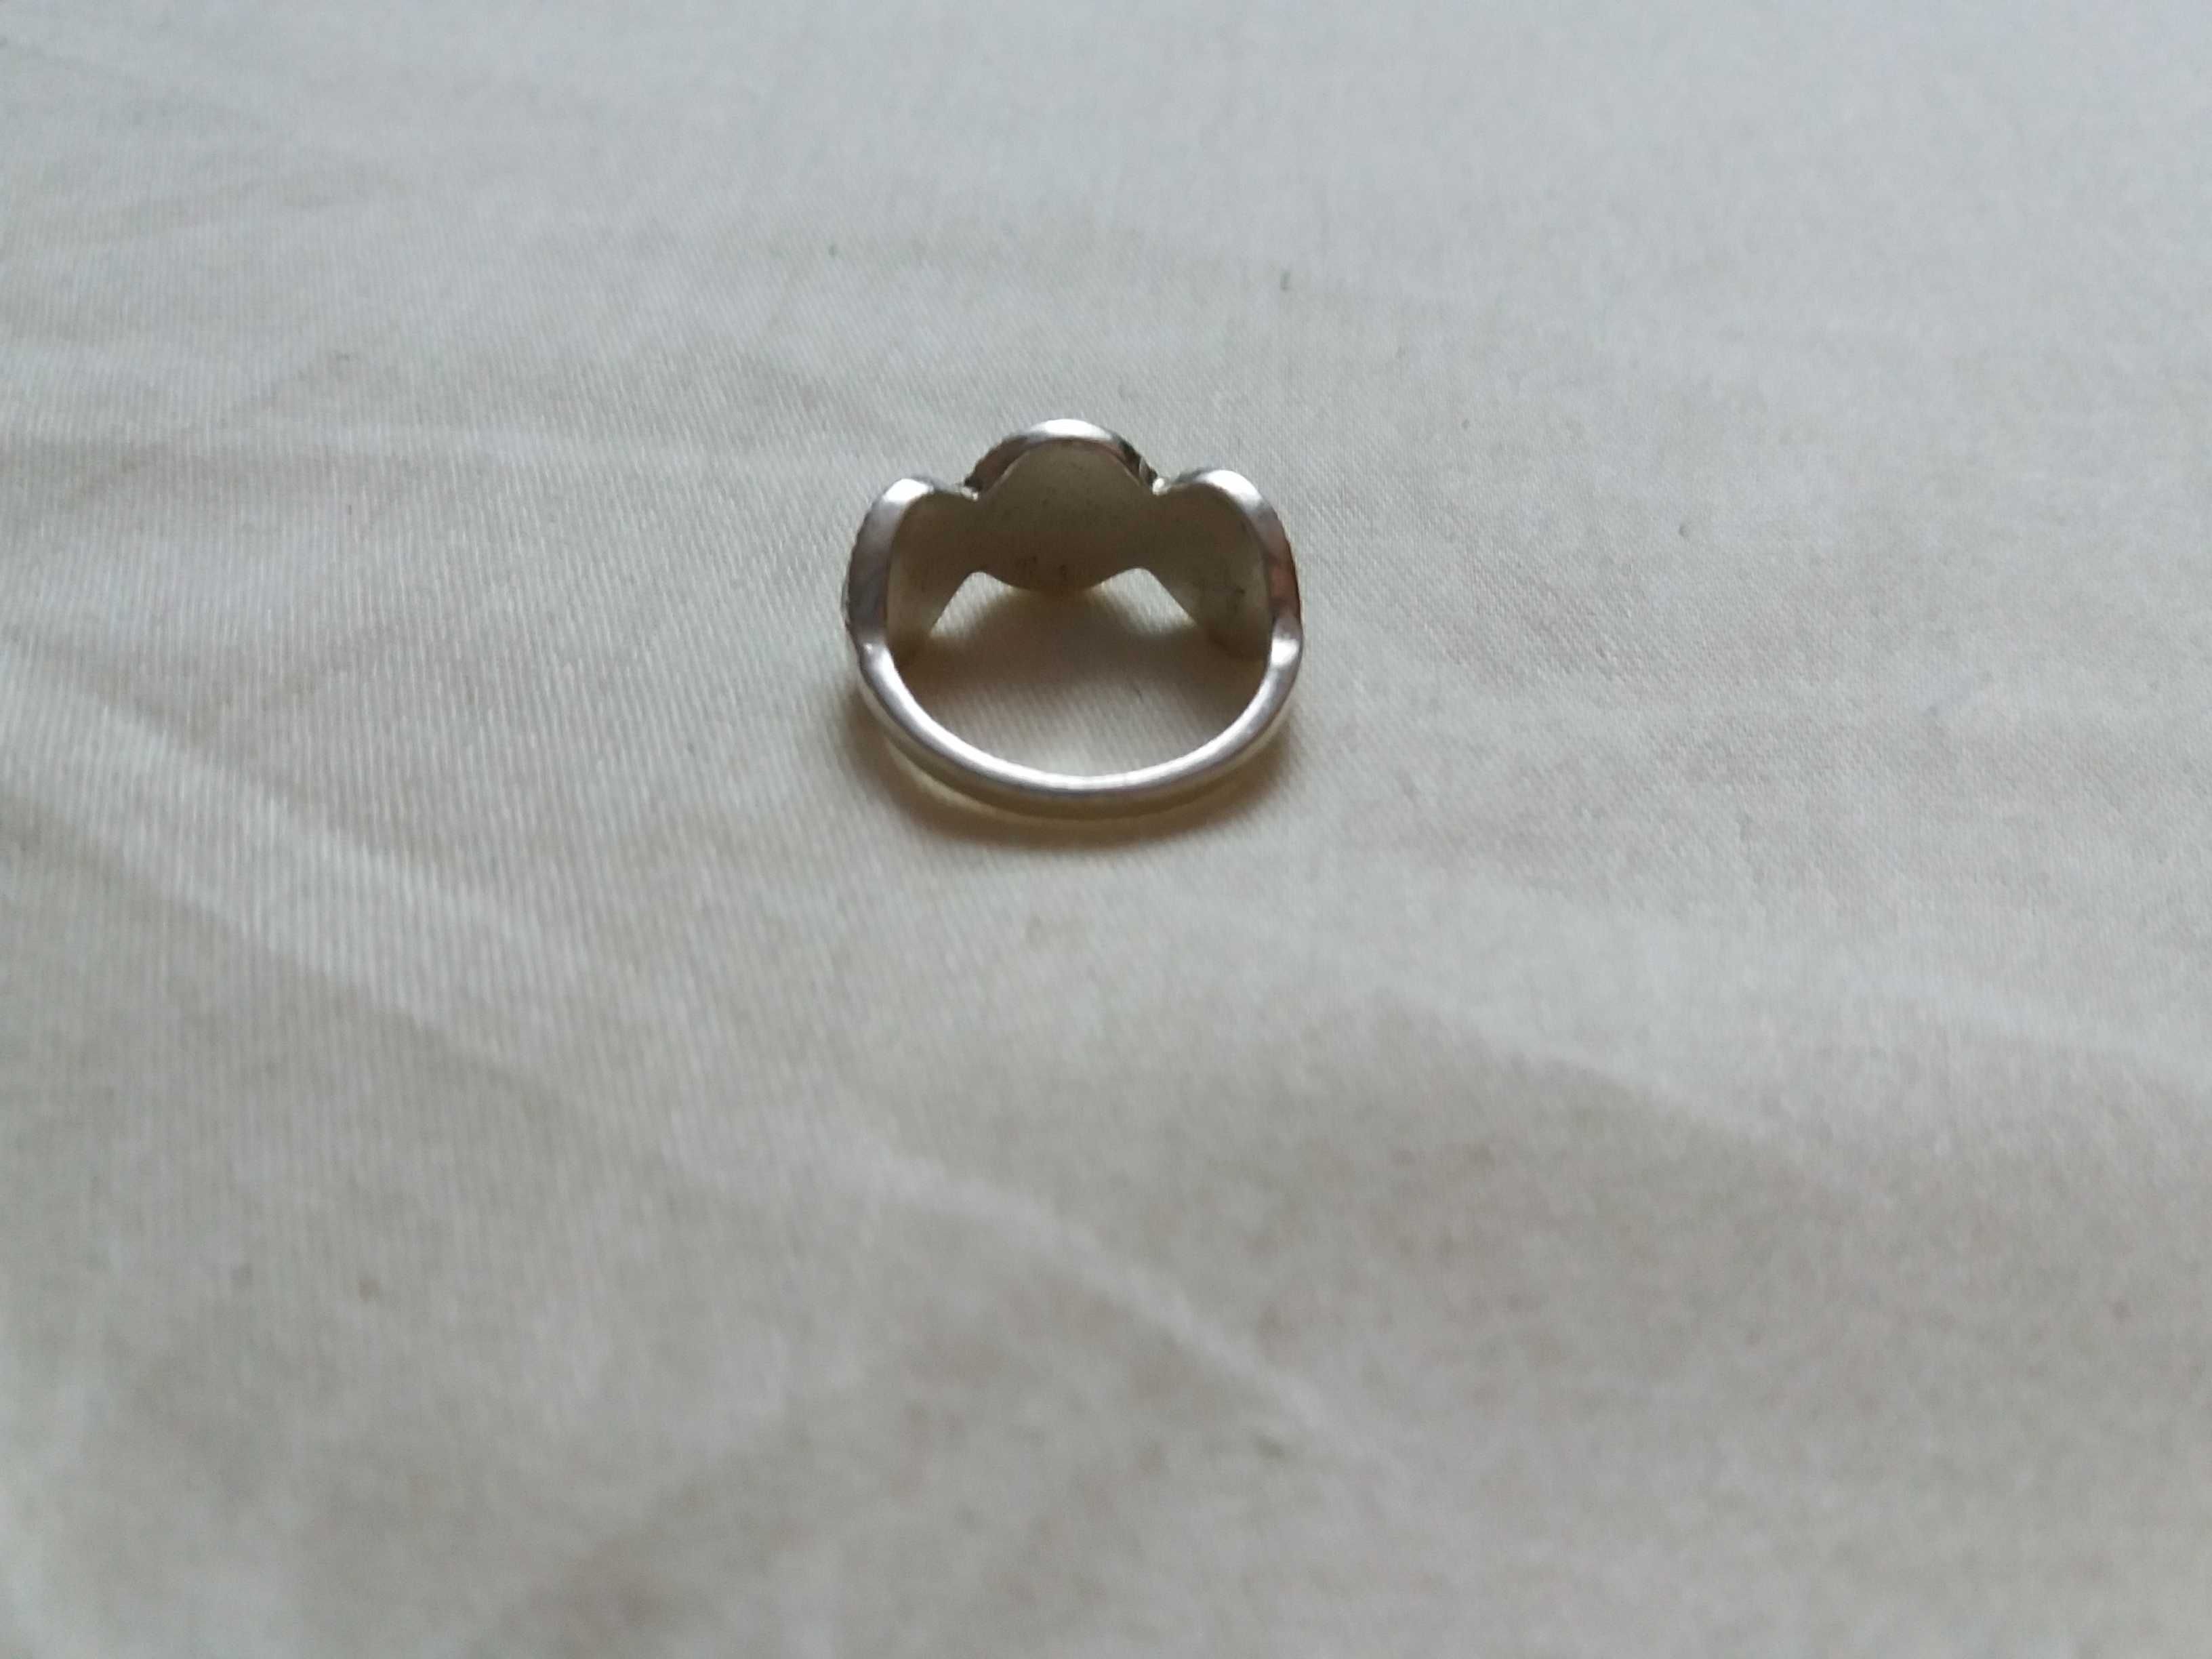 Posrebrzany pierścionek czarne oczka rozmiar 17 średnica 18mm jak nowy